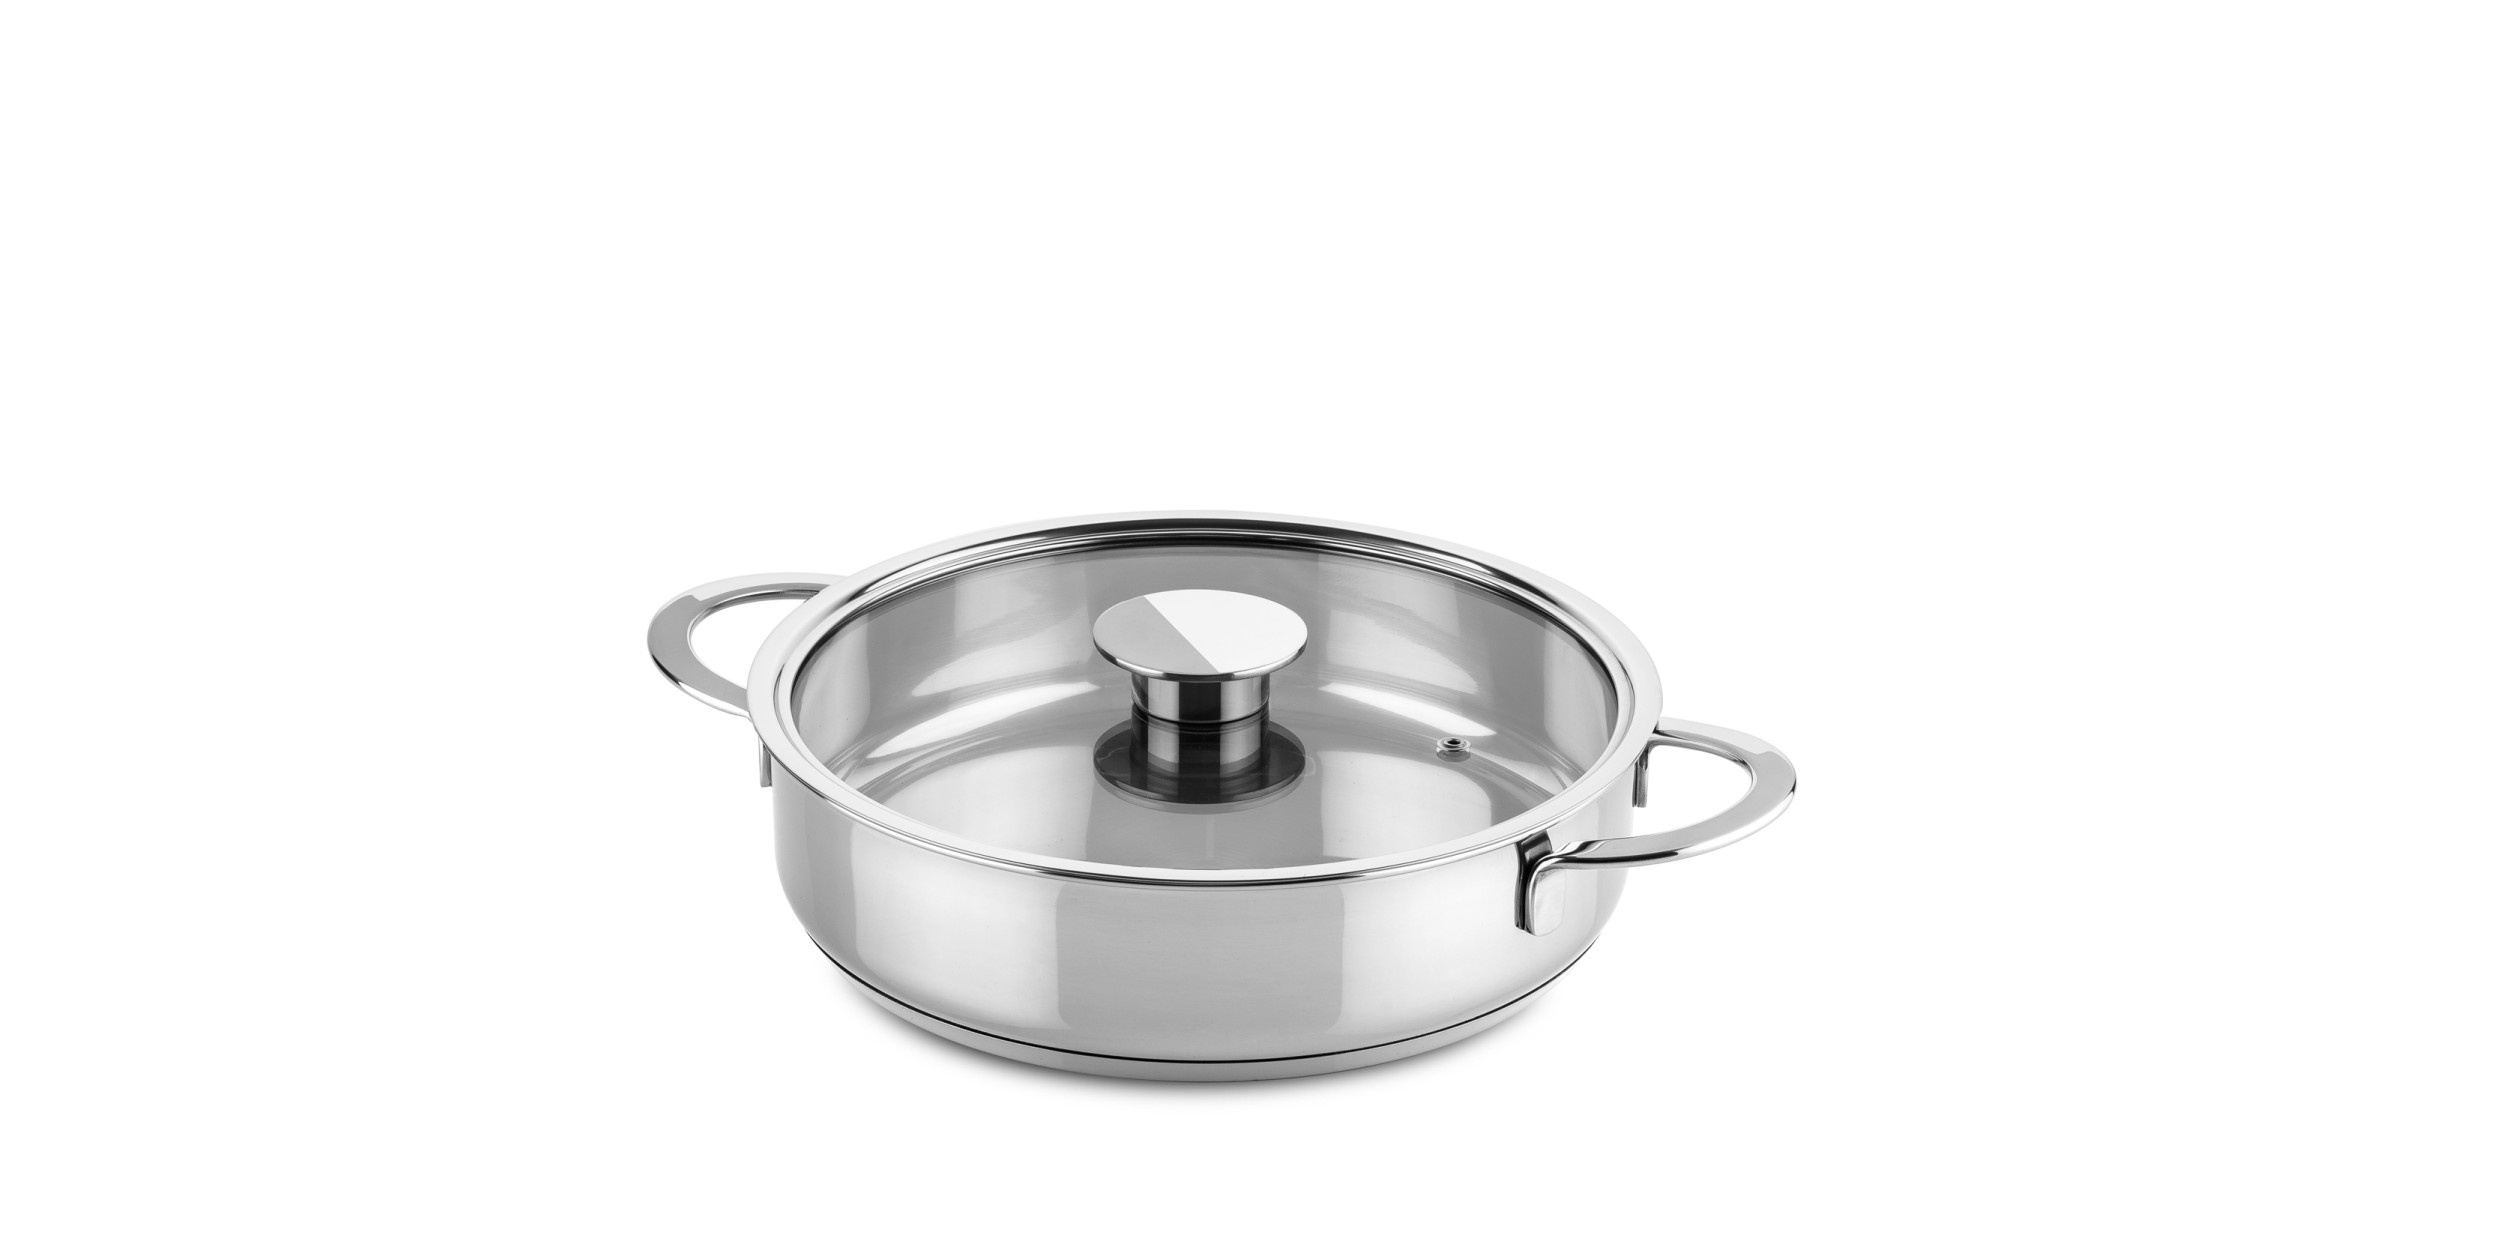 aspect Foto Schuldenaar Frying pan 2 handles 26 cm Stainless Steel - Gourmet - Cookware